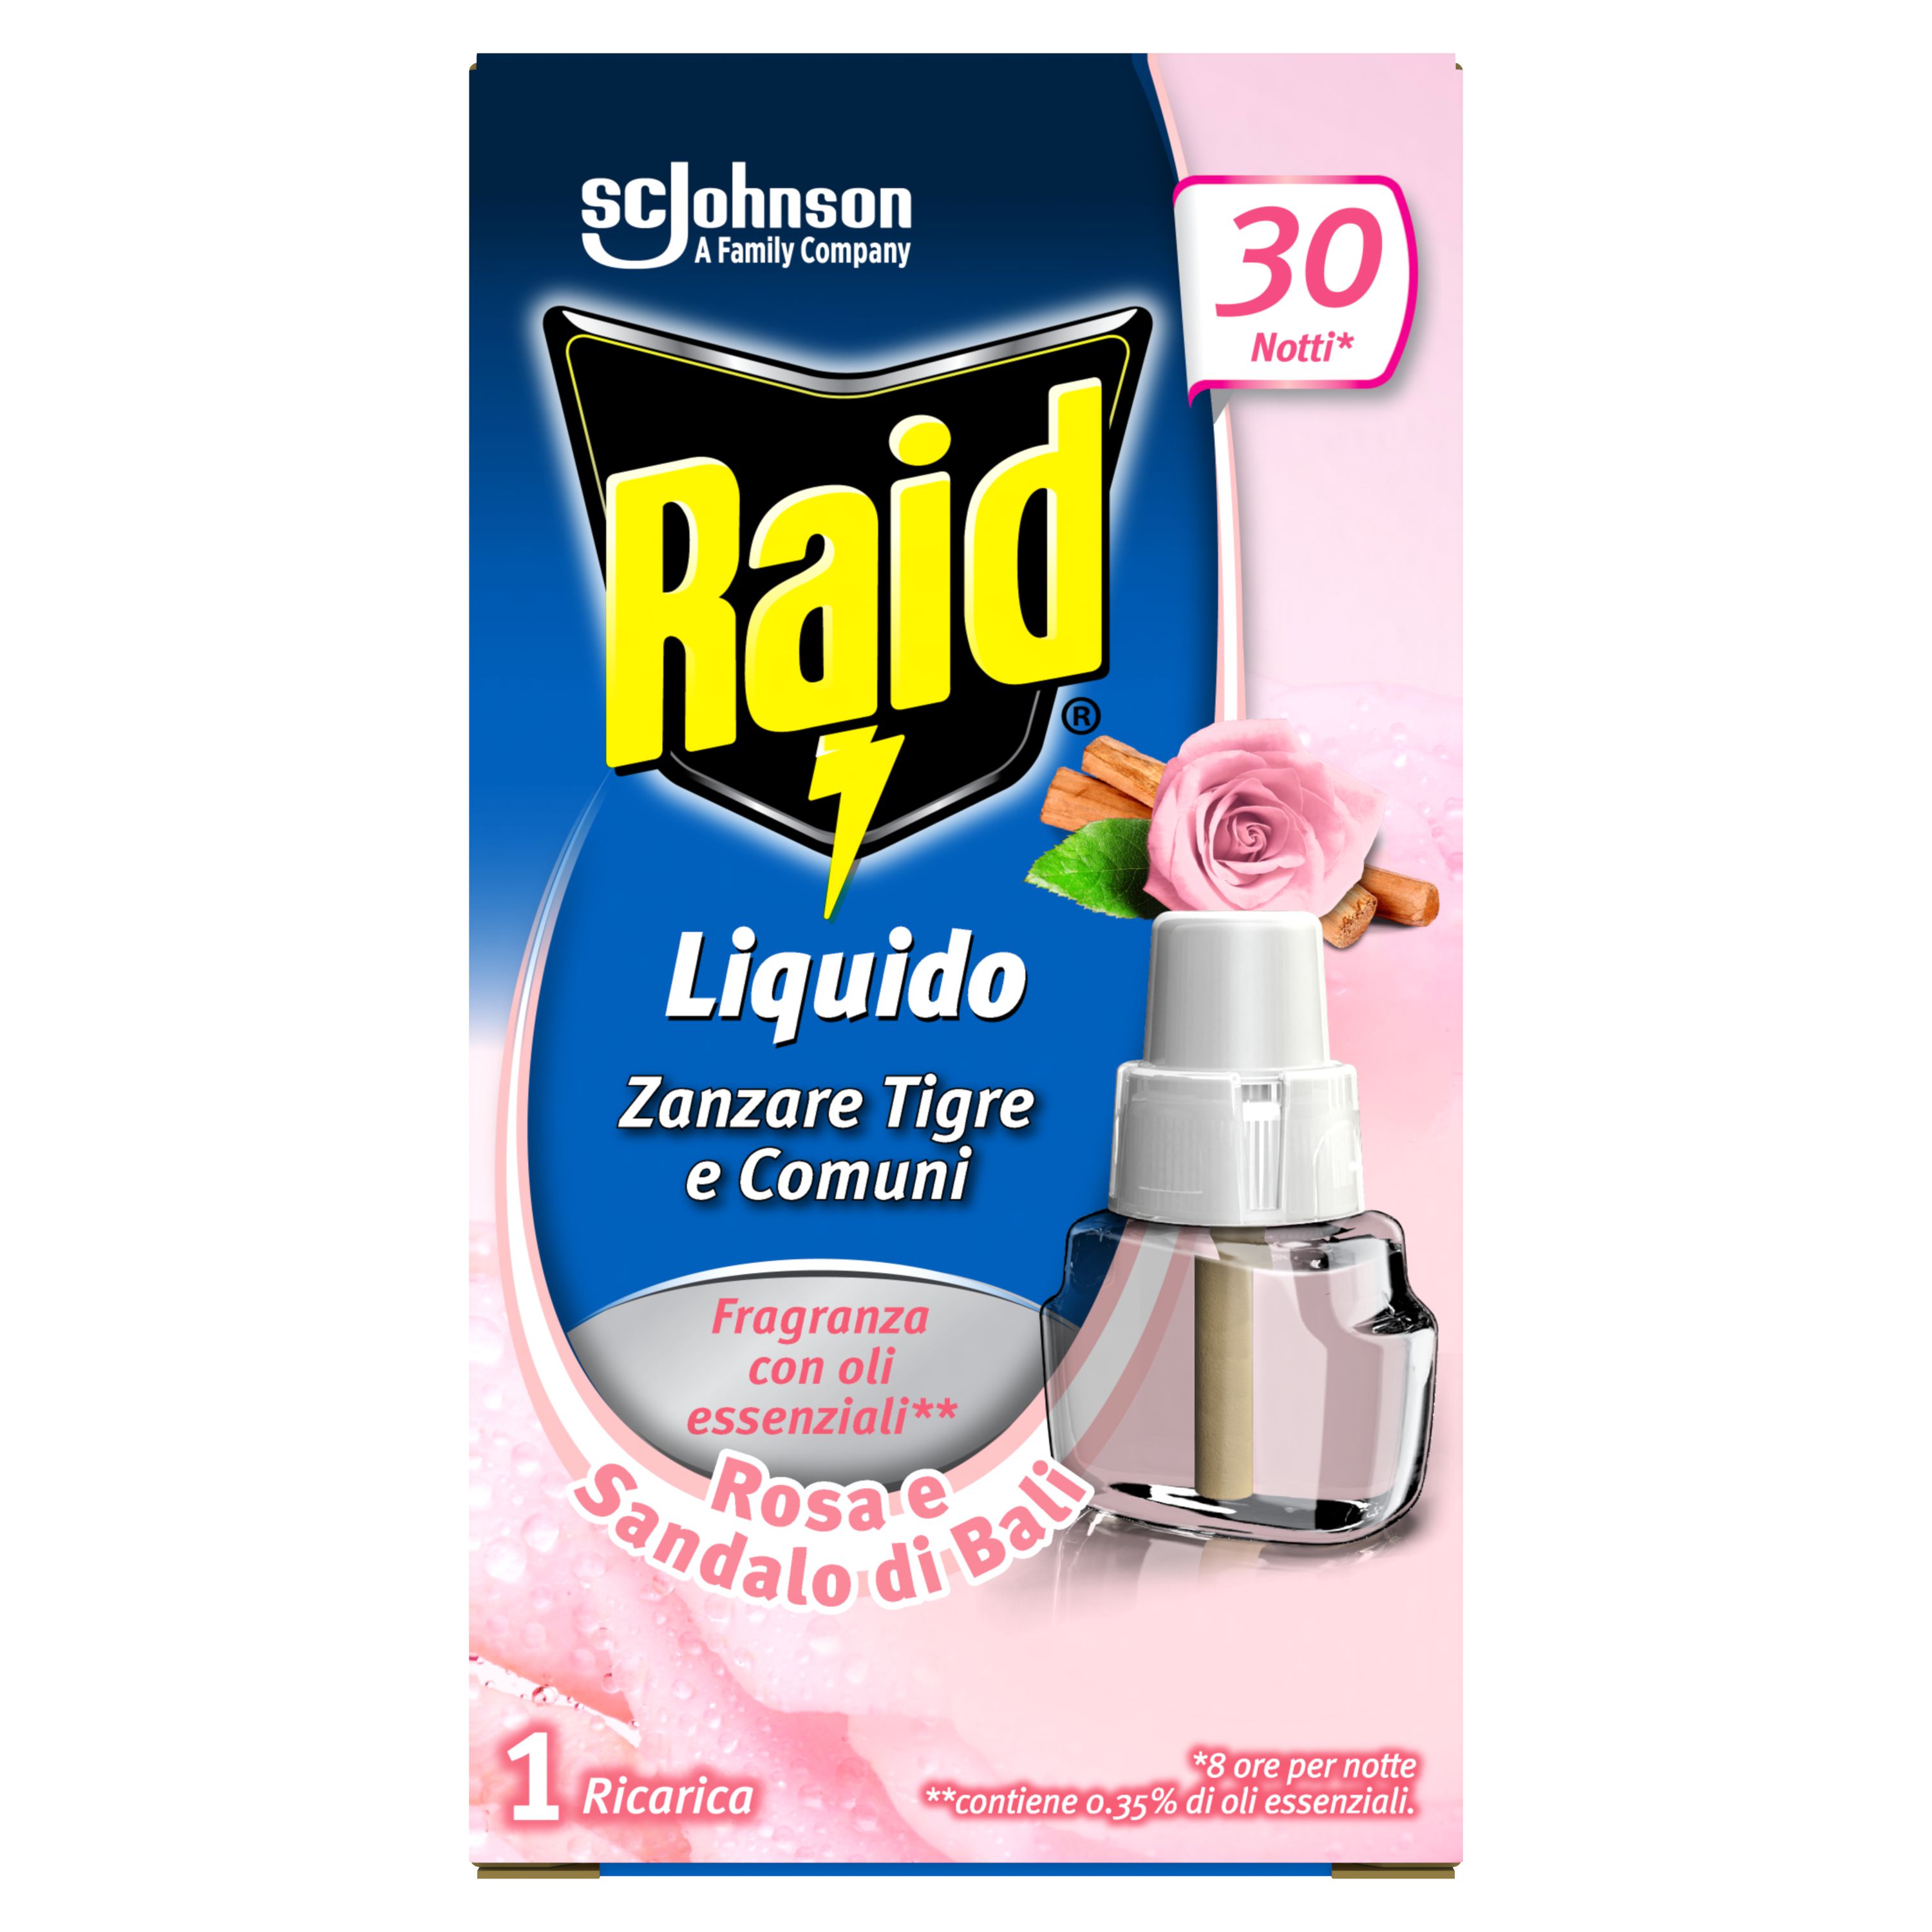 Raid® Liquido Rosa e Sandalo di Bali